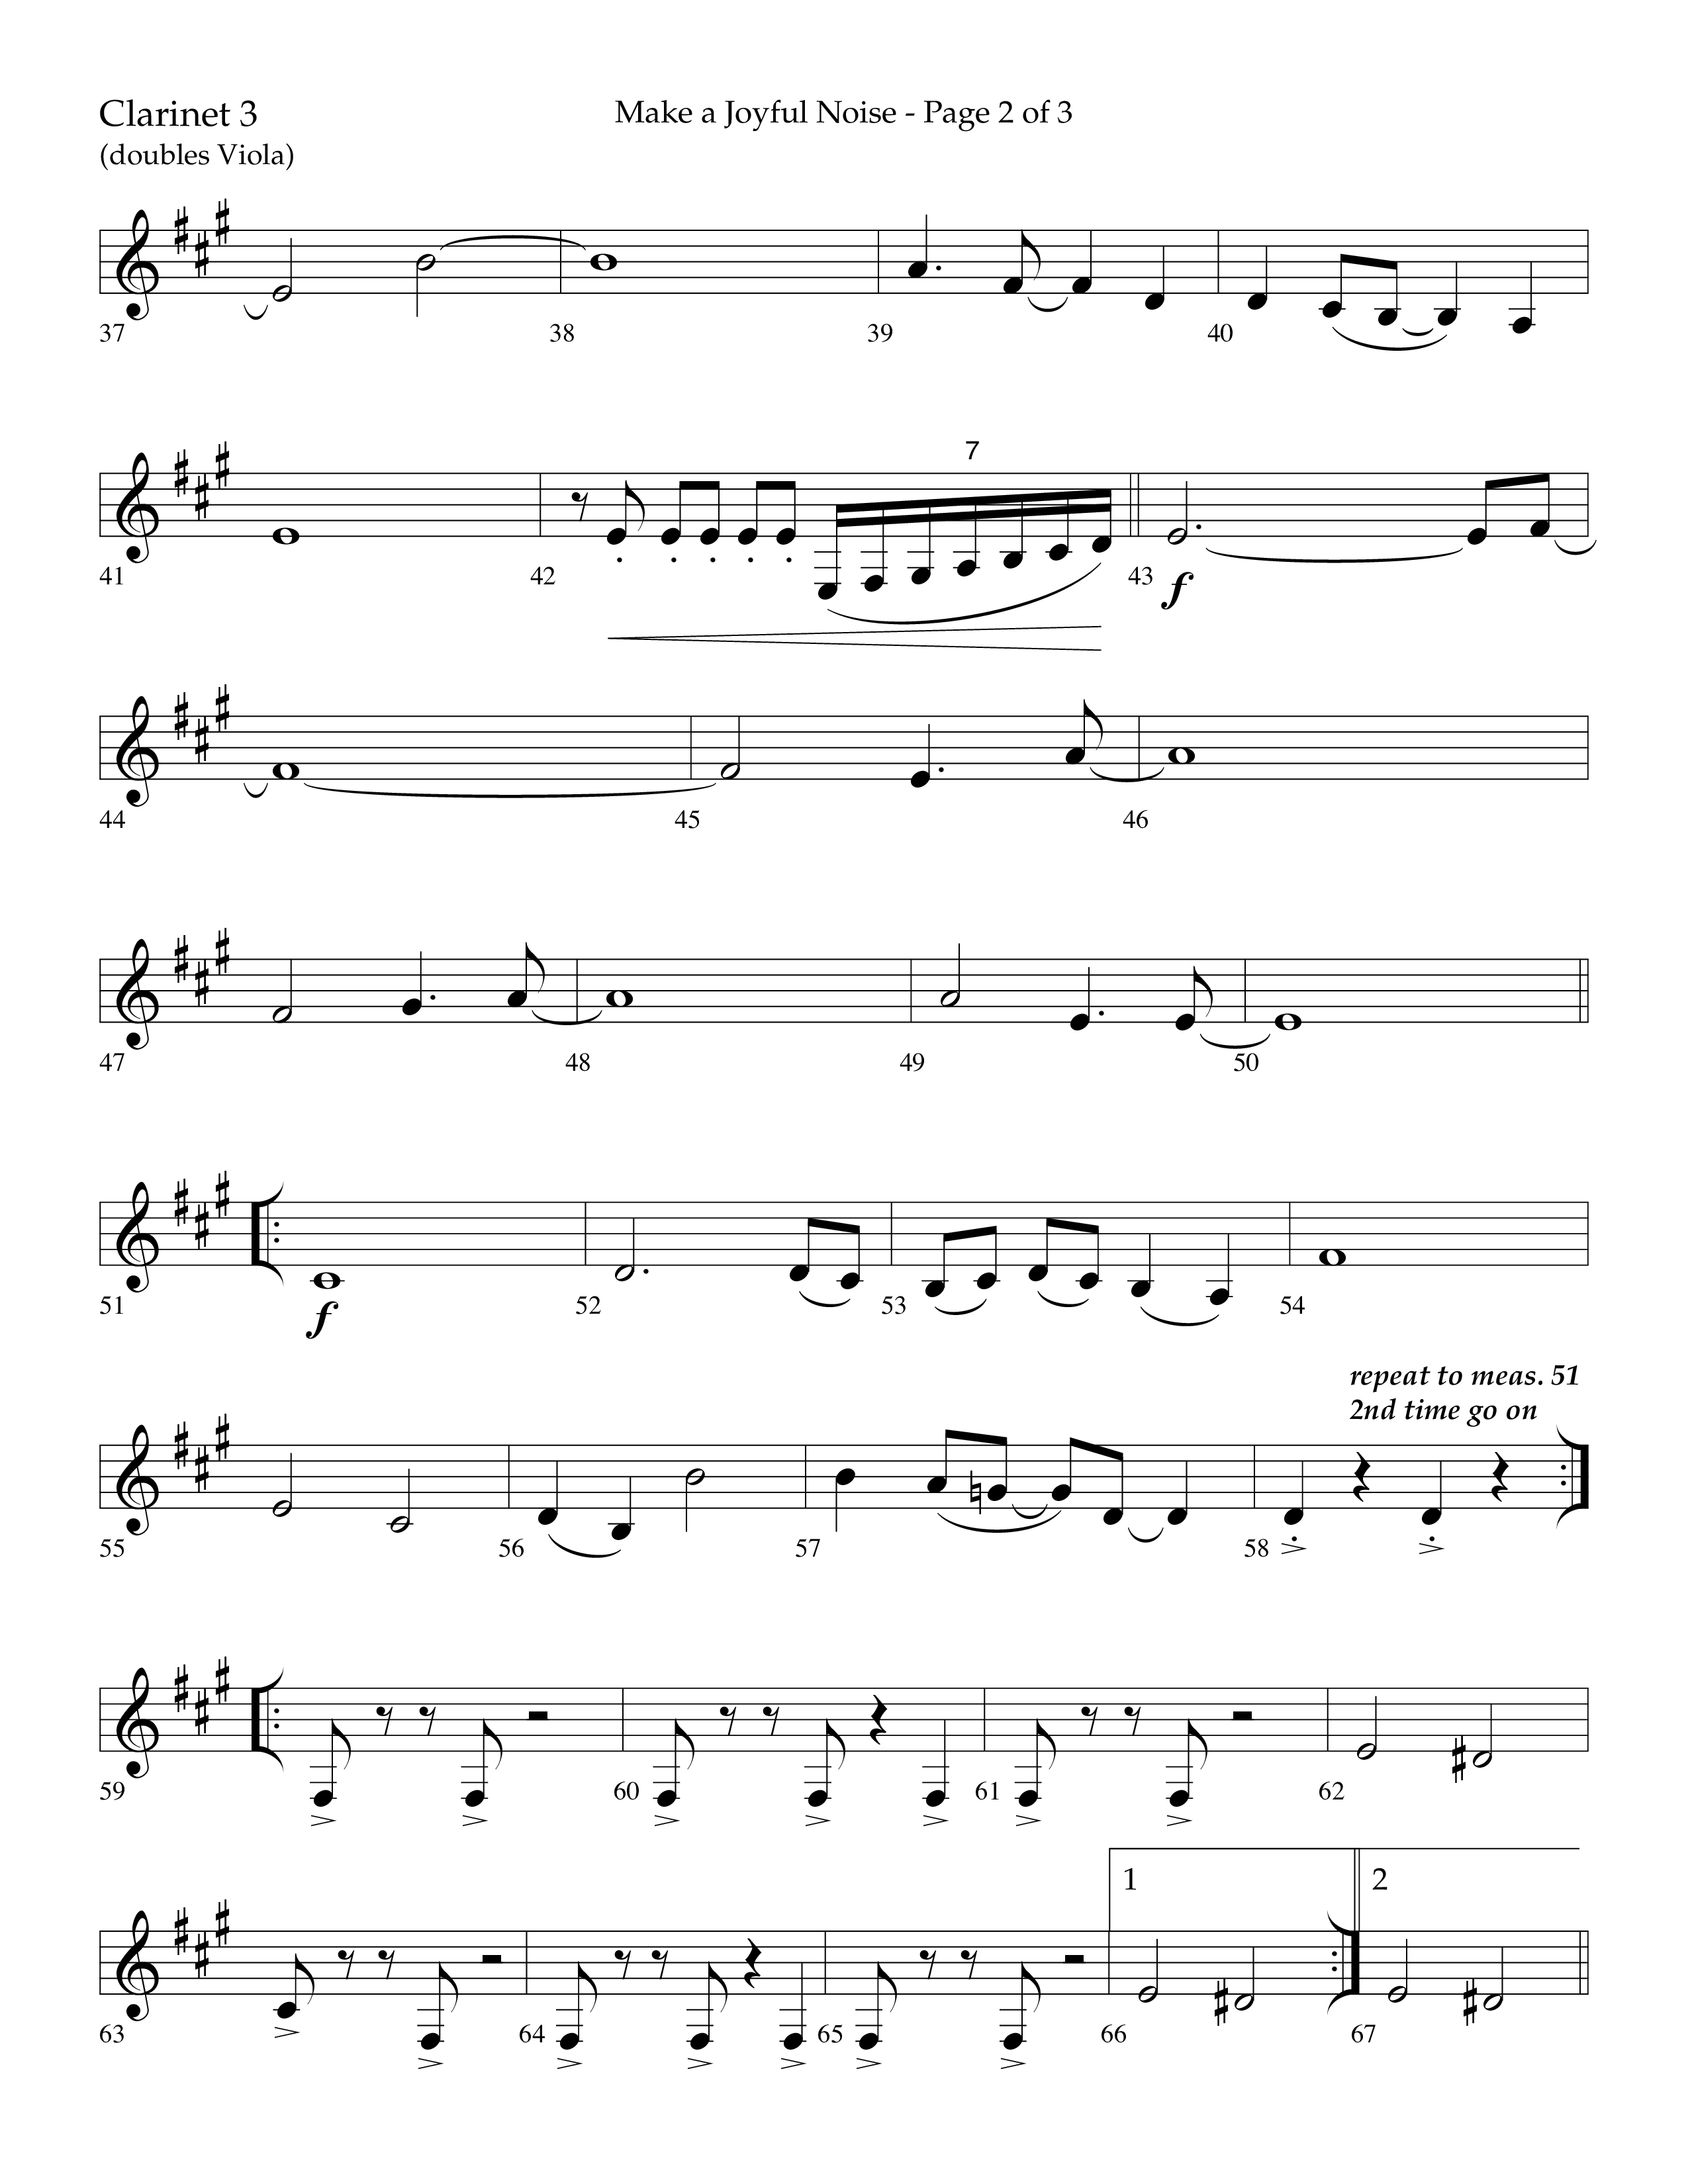 Make A Joyful Noise (Choral Anthem SATB) Clarinet 3 (Lifeway Choral / Arr. David Wise / Orch. Daniel Semsen)